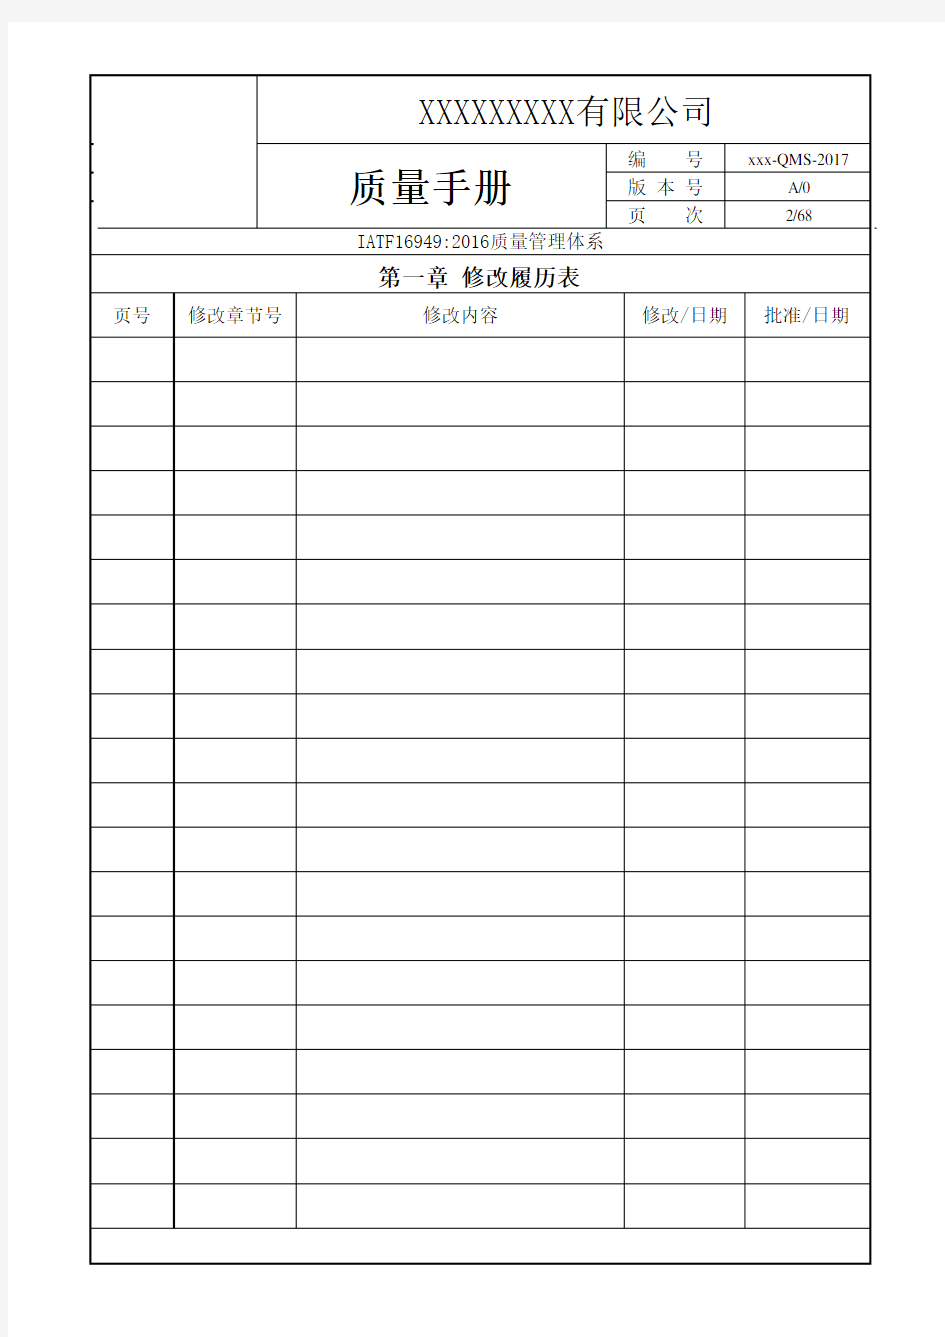 IATF16949-2016版质量手册全套文件模板